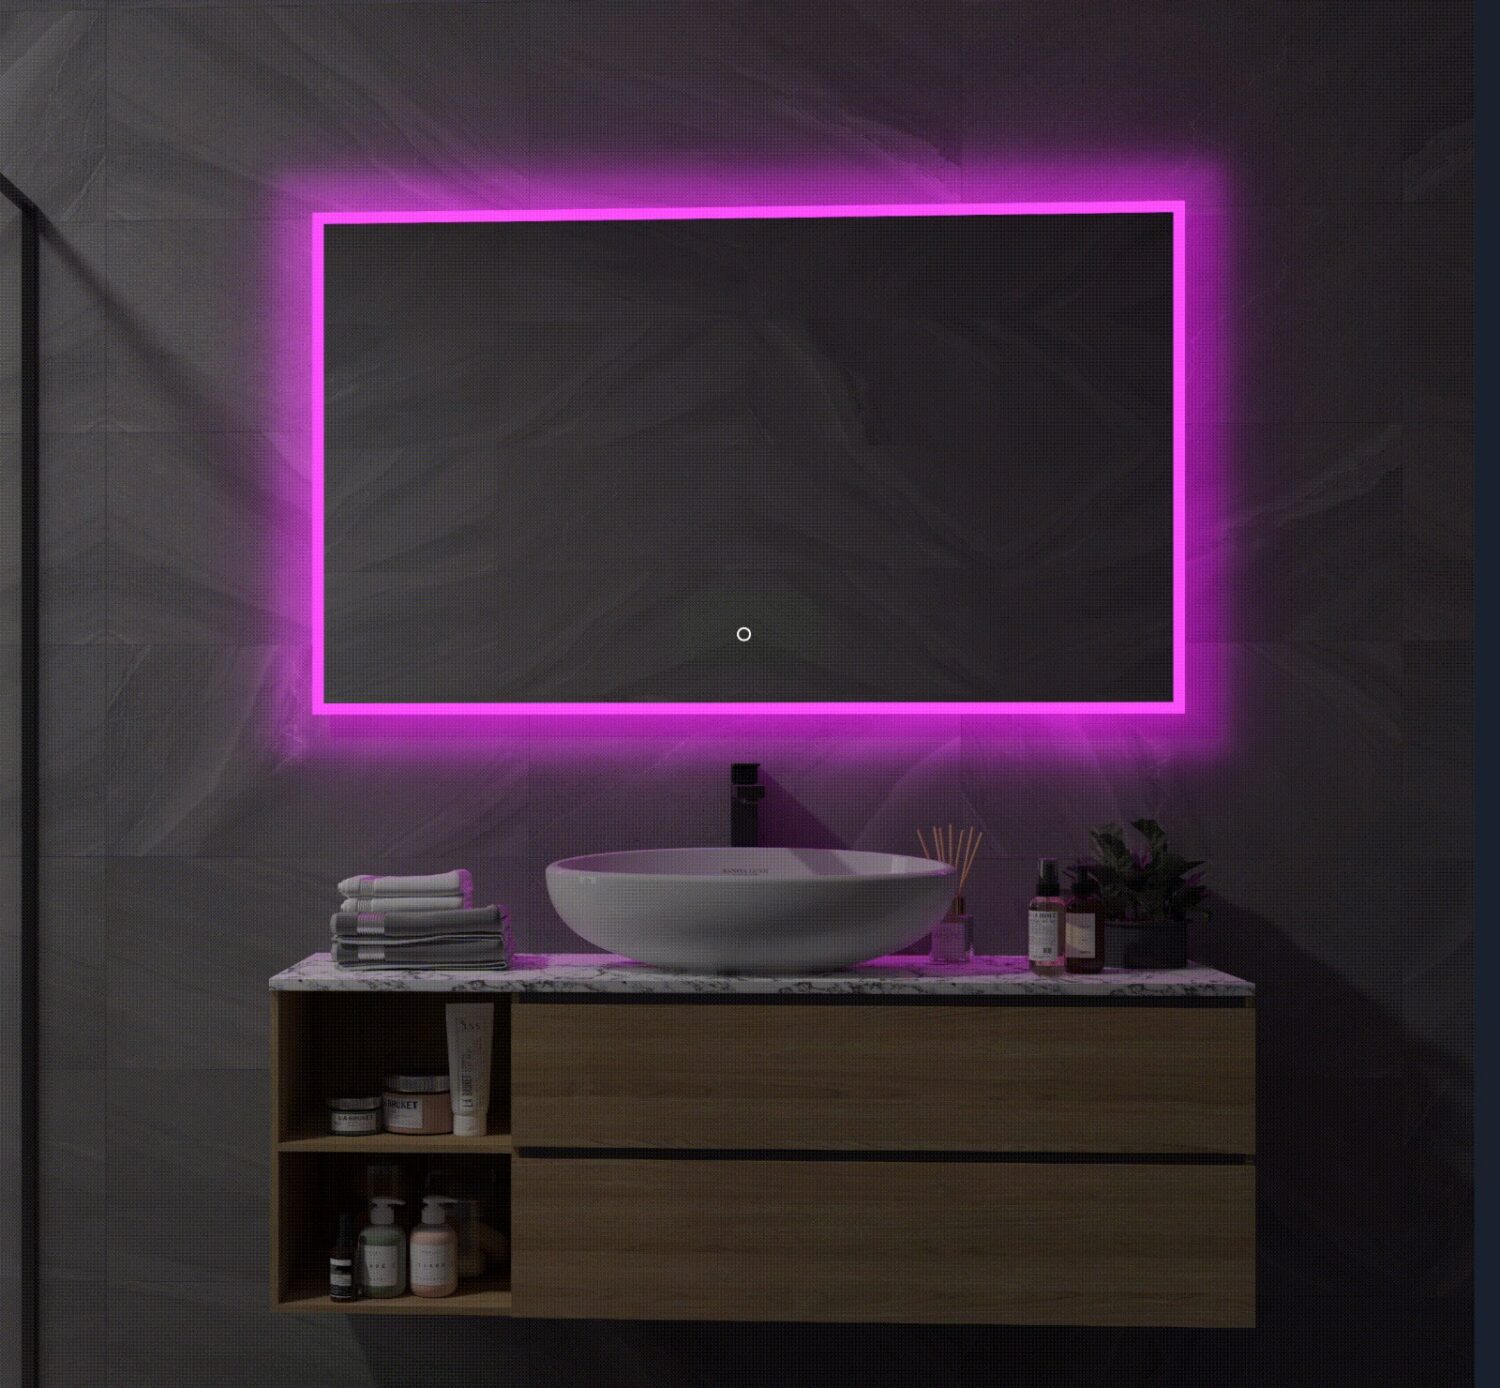 ader Wantrouwen Wijzer Slimme spiegel met RGB verlichting, verwarming, touch sensor en  afstandsbediening 120x70 cm - Designspiegels